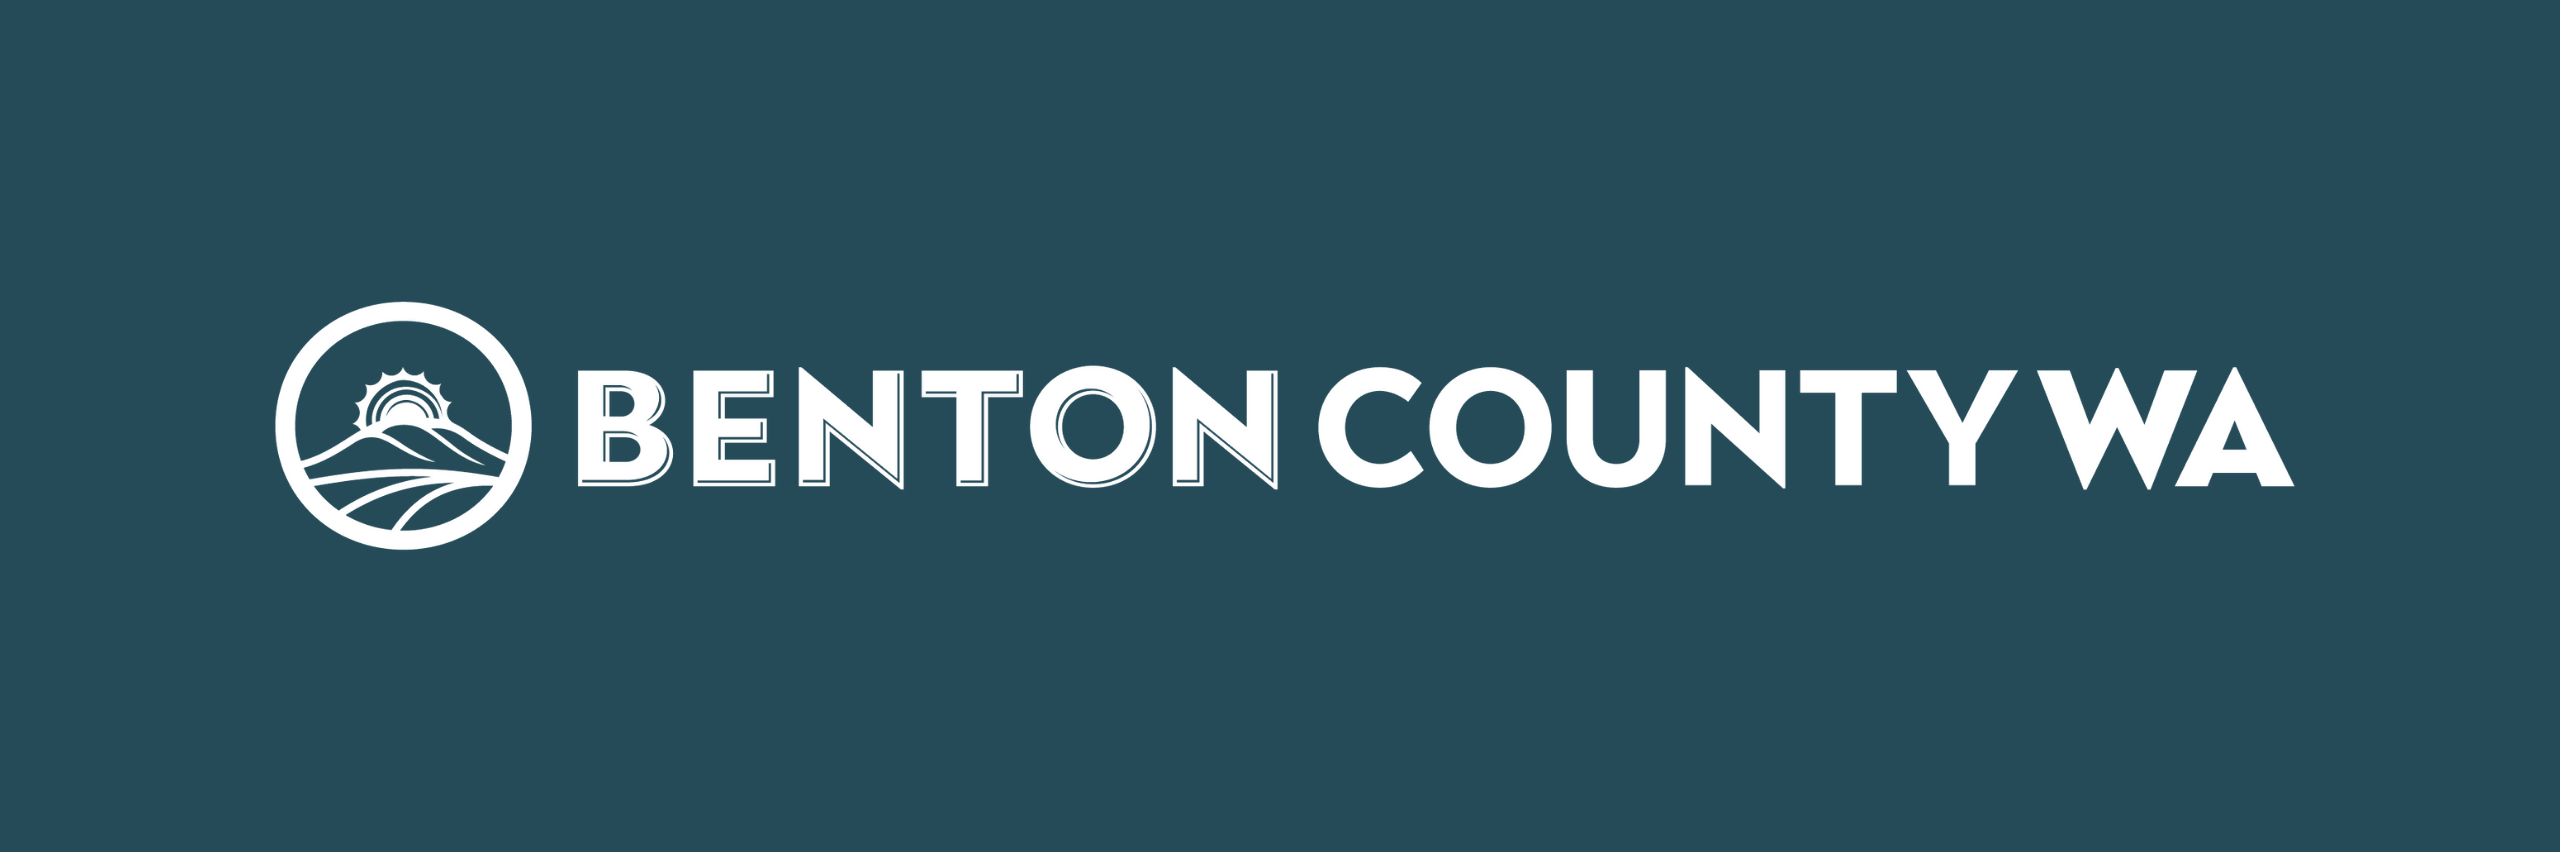 Benton County Elections Stream 4